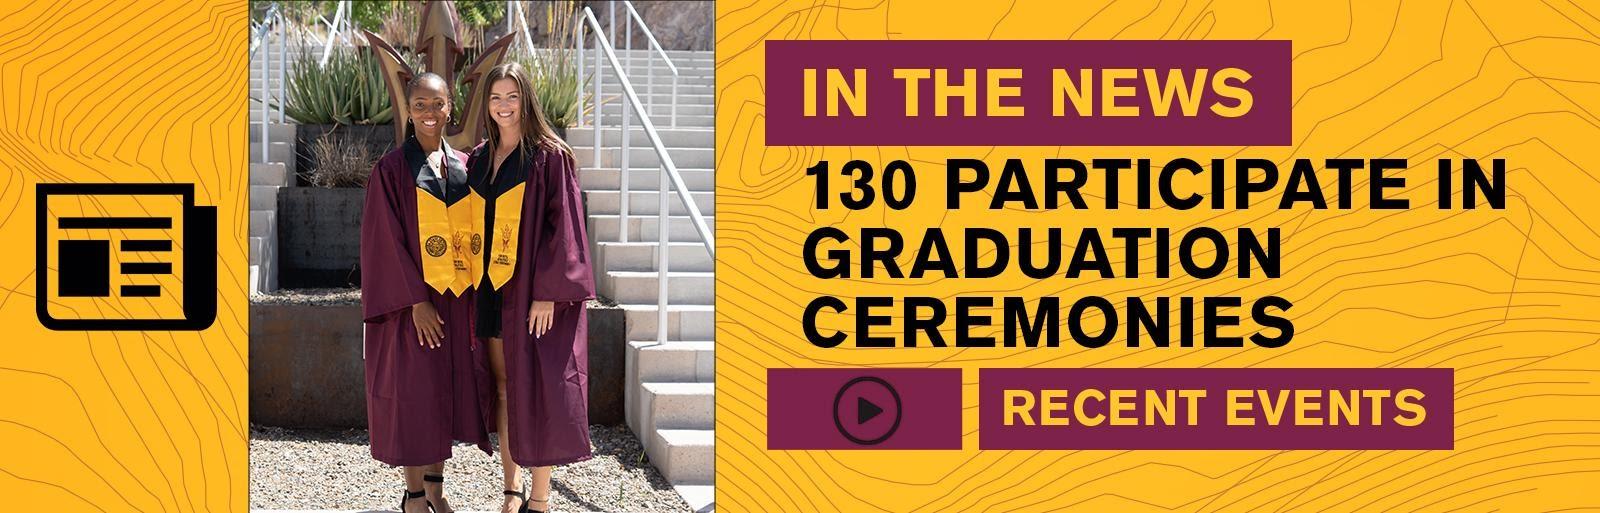 130 Participate in Graduation Ceremonies